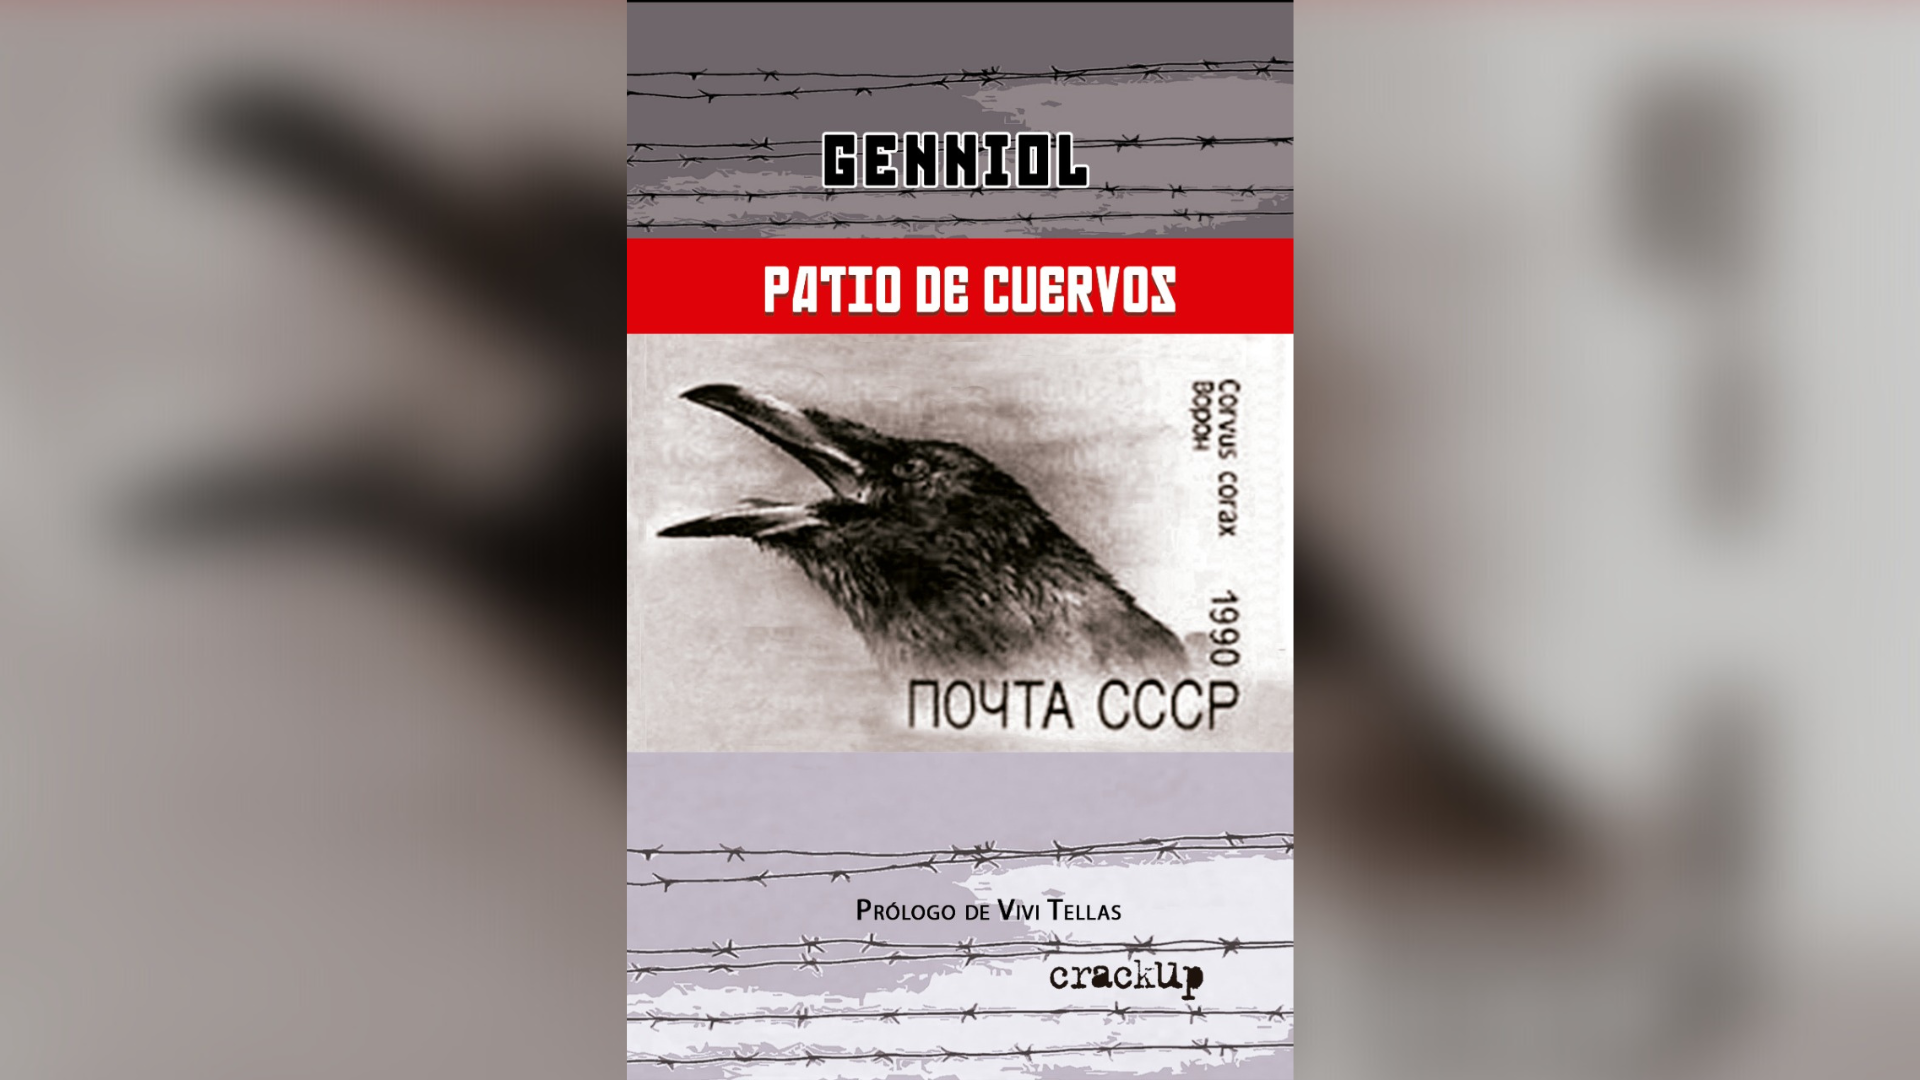 “Patio de cuervos”, la primera novela de Genniol